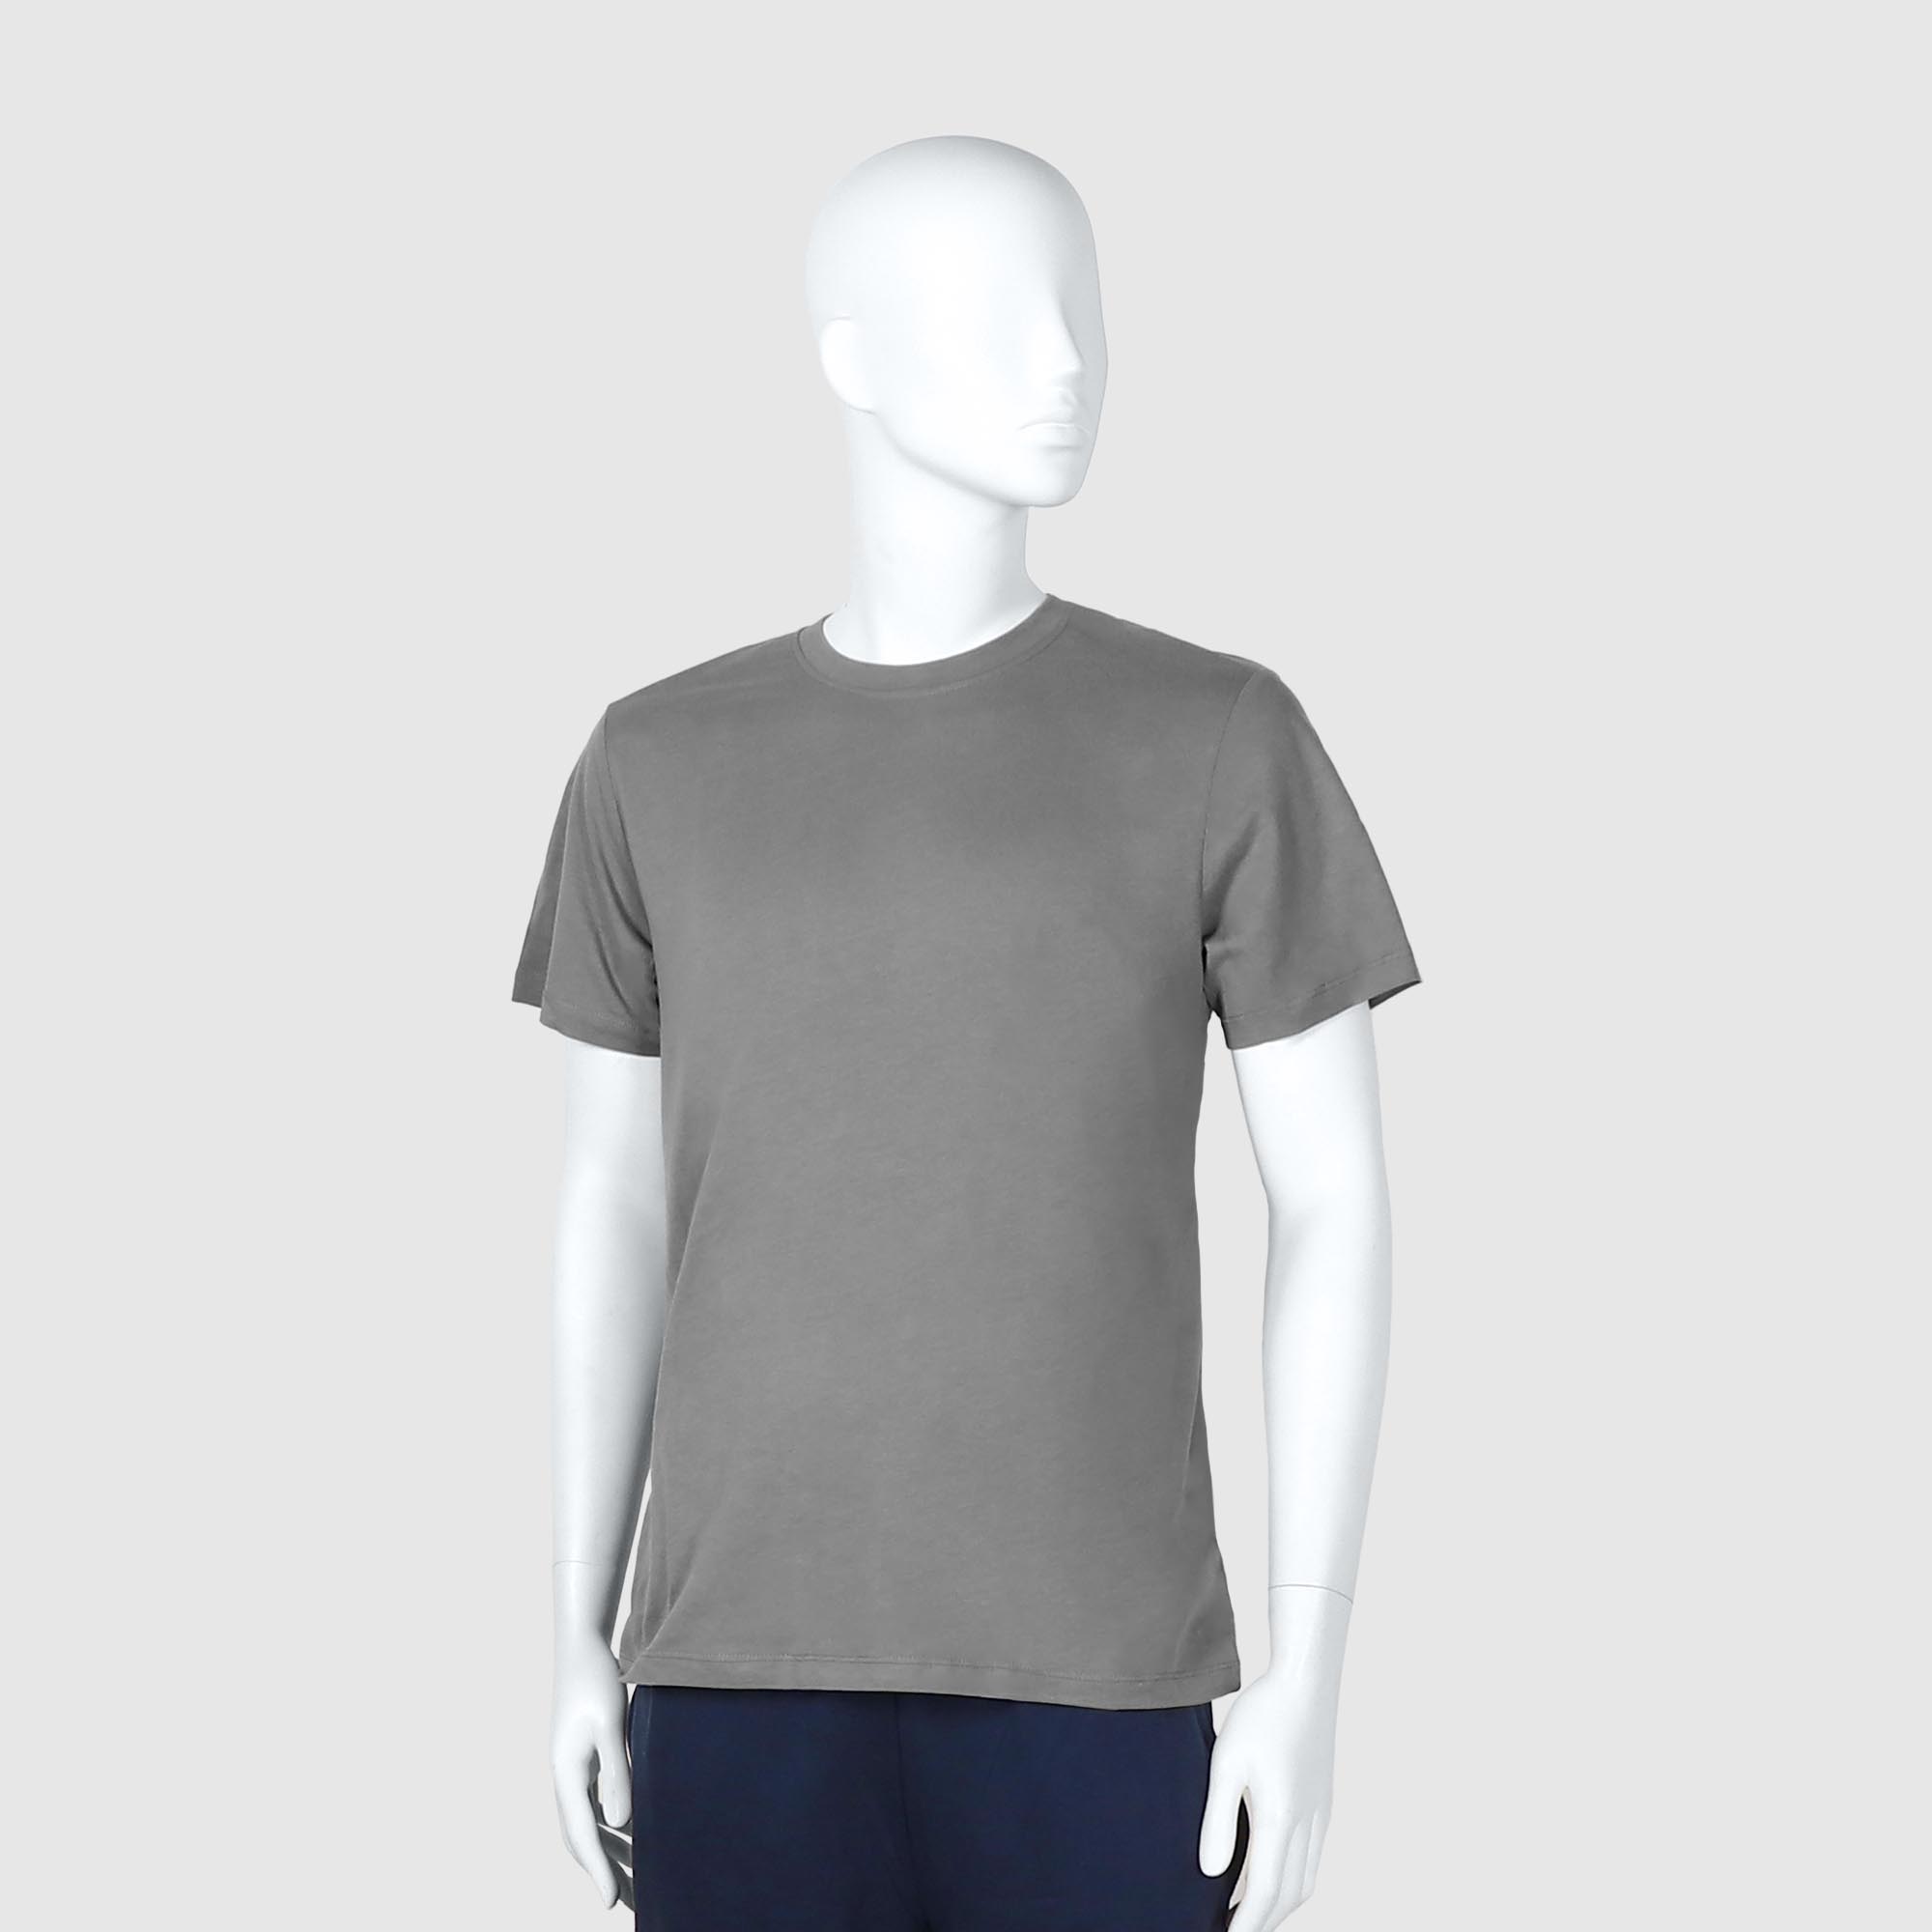 Мужская футболка Diva Teks серая (DTD-04), цвет серый, размер 46-48